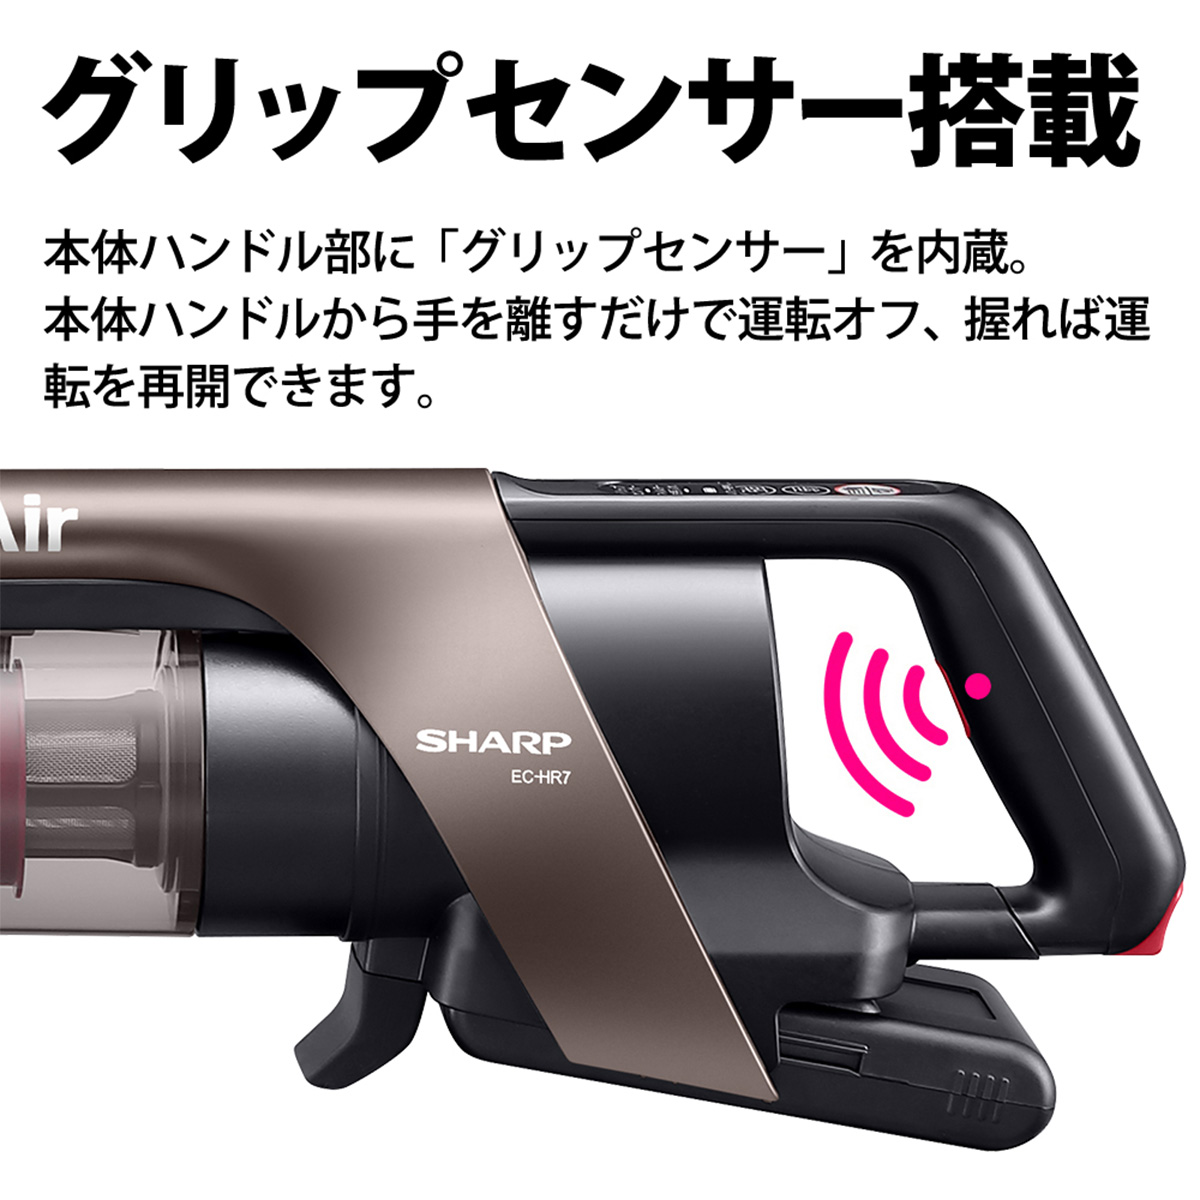 【在庫限り】シャープ コードレススティッククリーナー サイクロン式 RACTIVE Air ピンク系